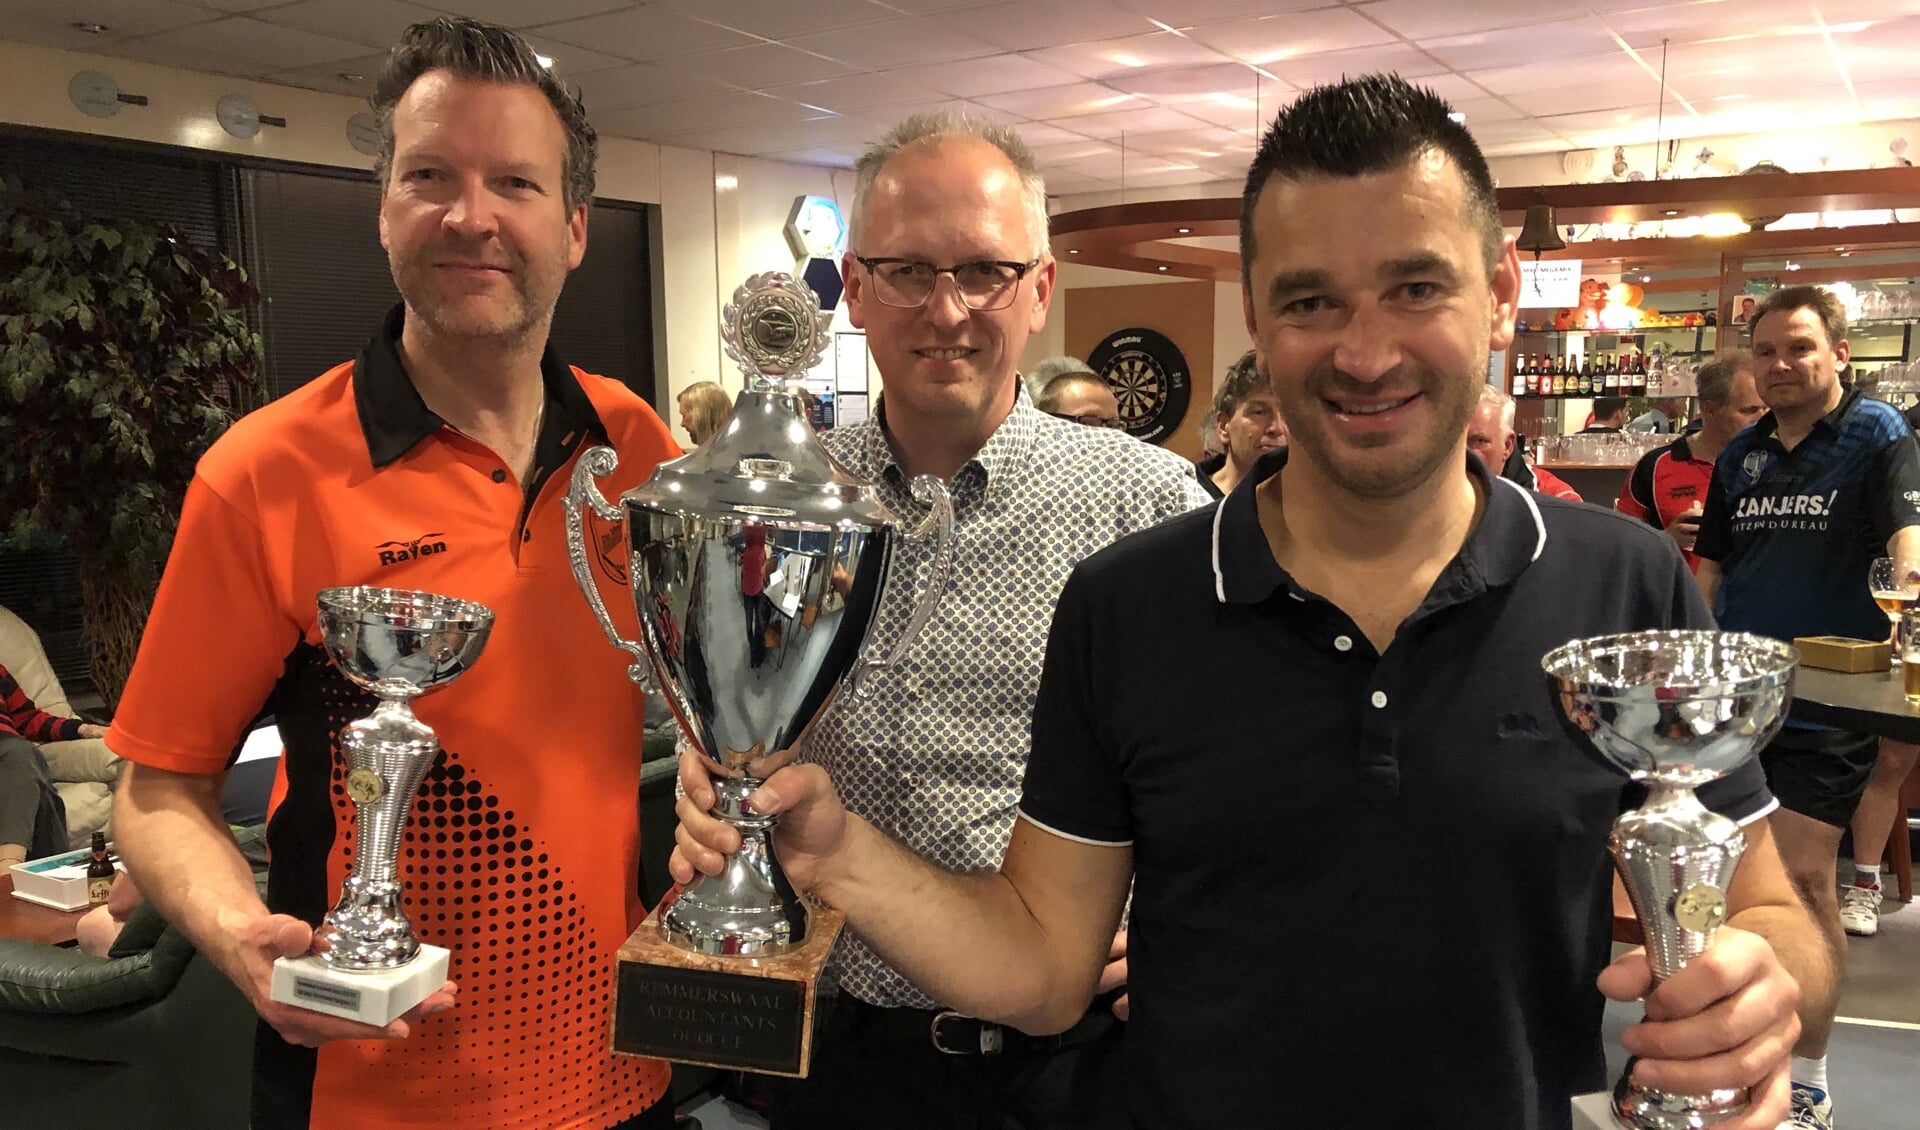 De winnaars Marco Stad en Nico de Hoon hebben zojuist uit handen van Frank Voermans de Remmerswaal Accountants Duocup ontvangen. FOTO LOU AANRAAD